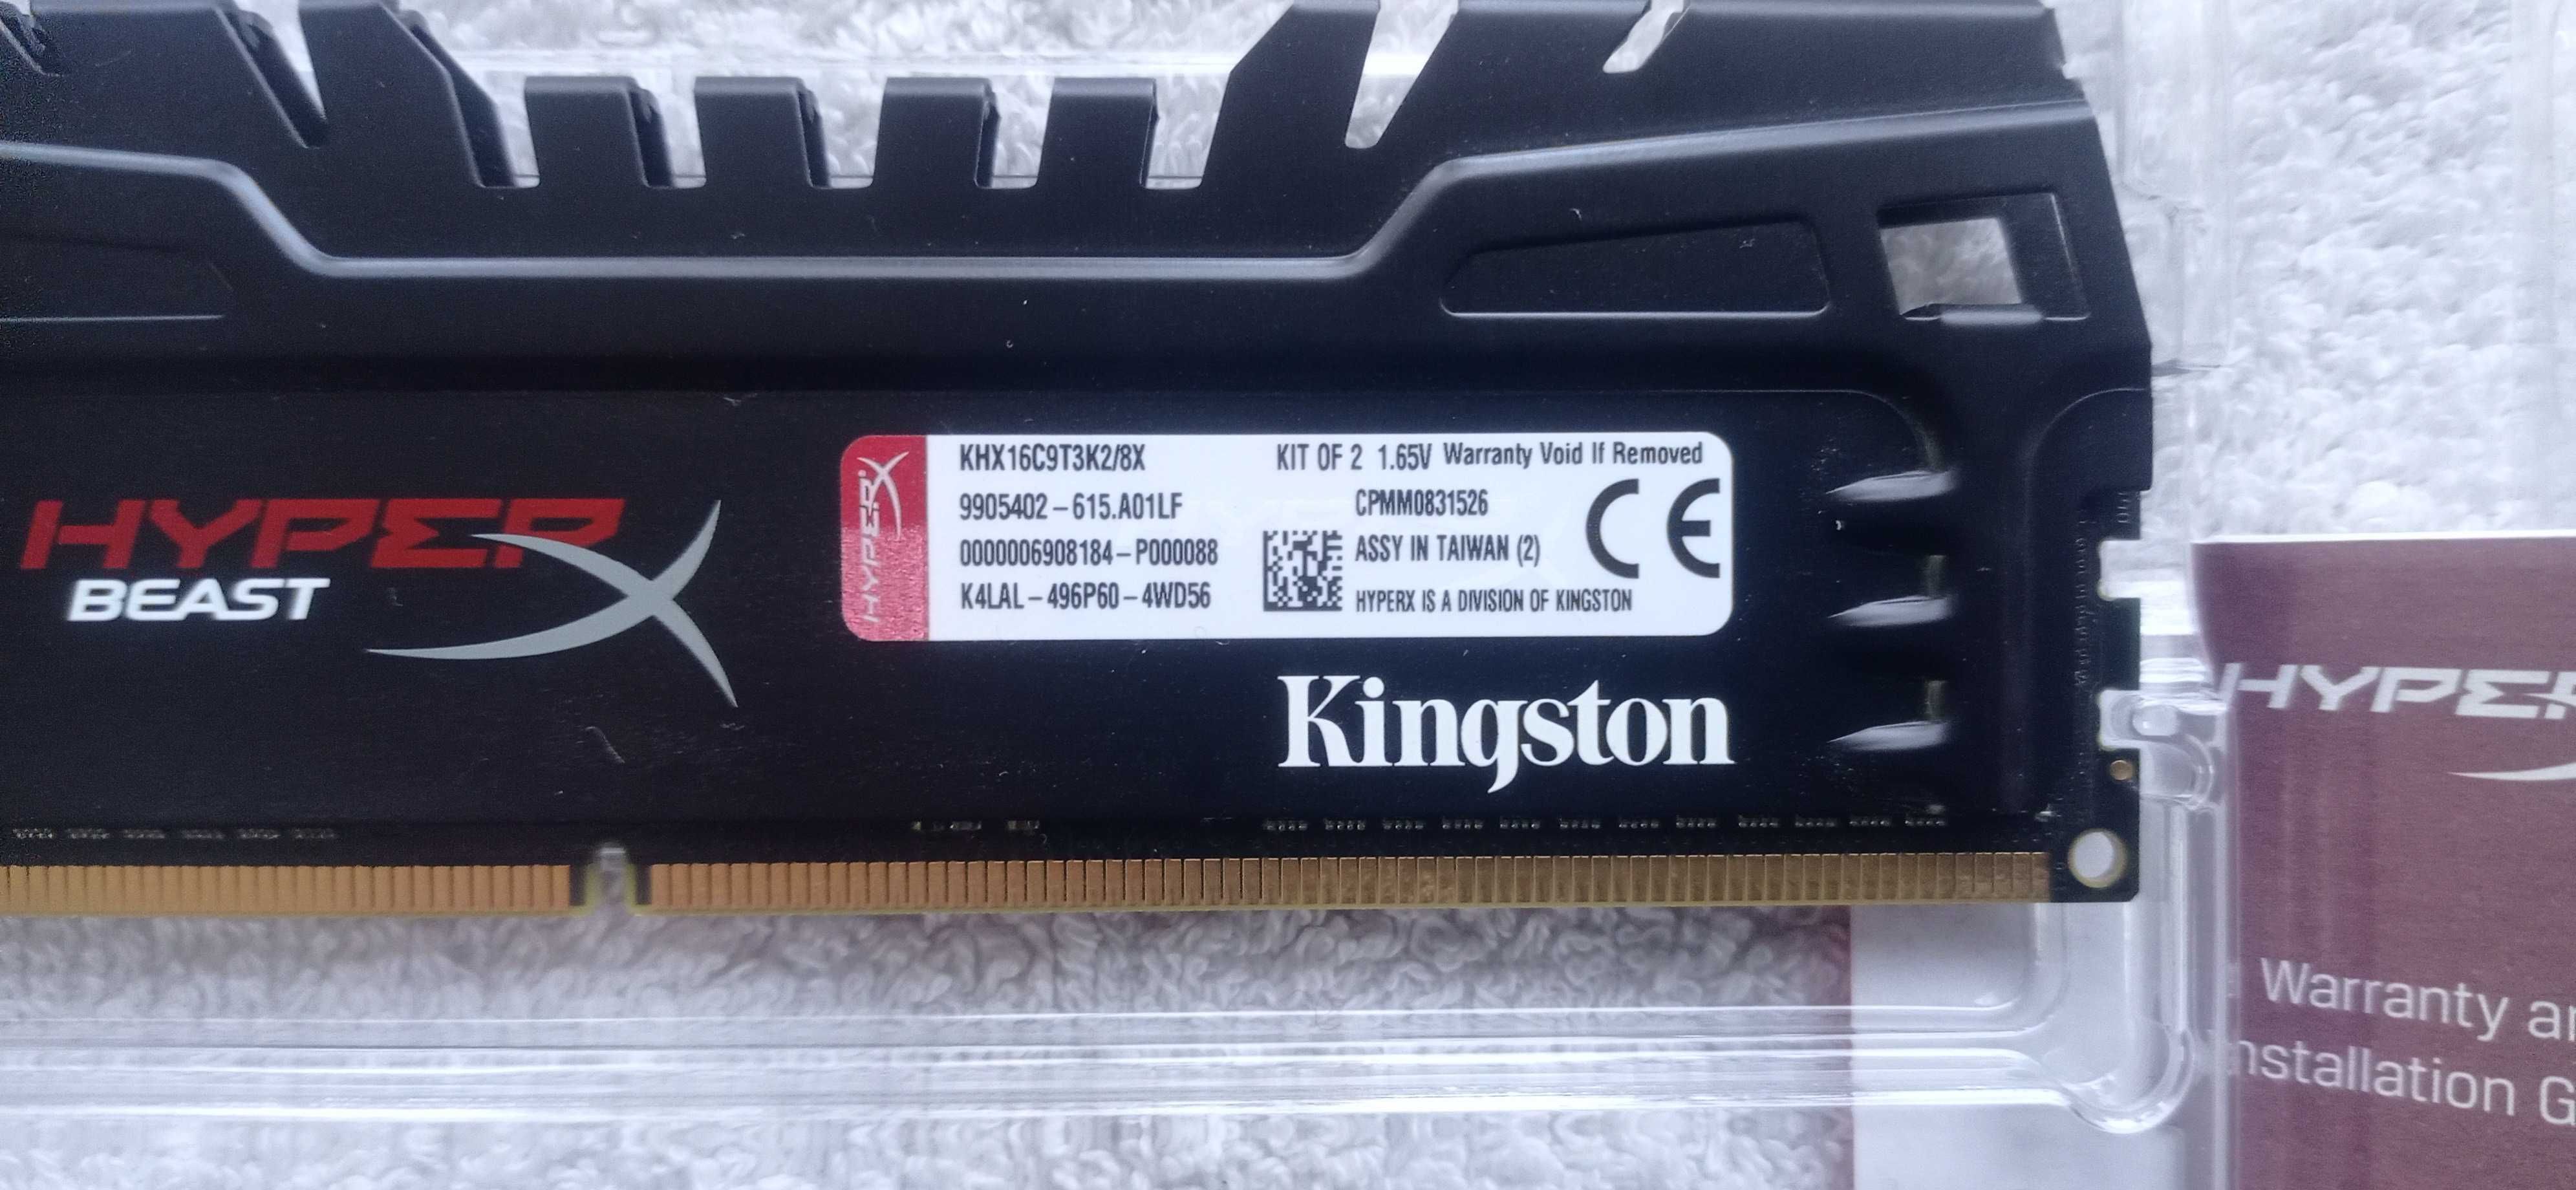 Kingston HyperX Beast XMP 8GB (2x4GB) KHX16C9T3K2/8X DDR3-1600